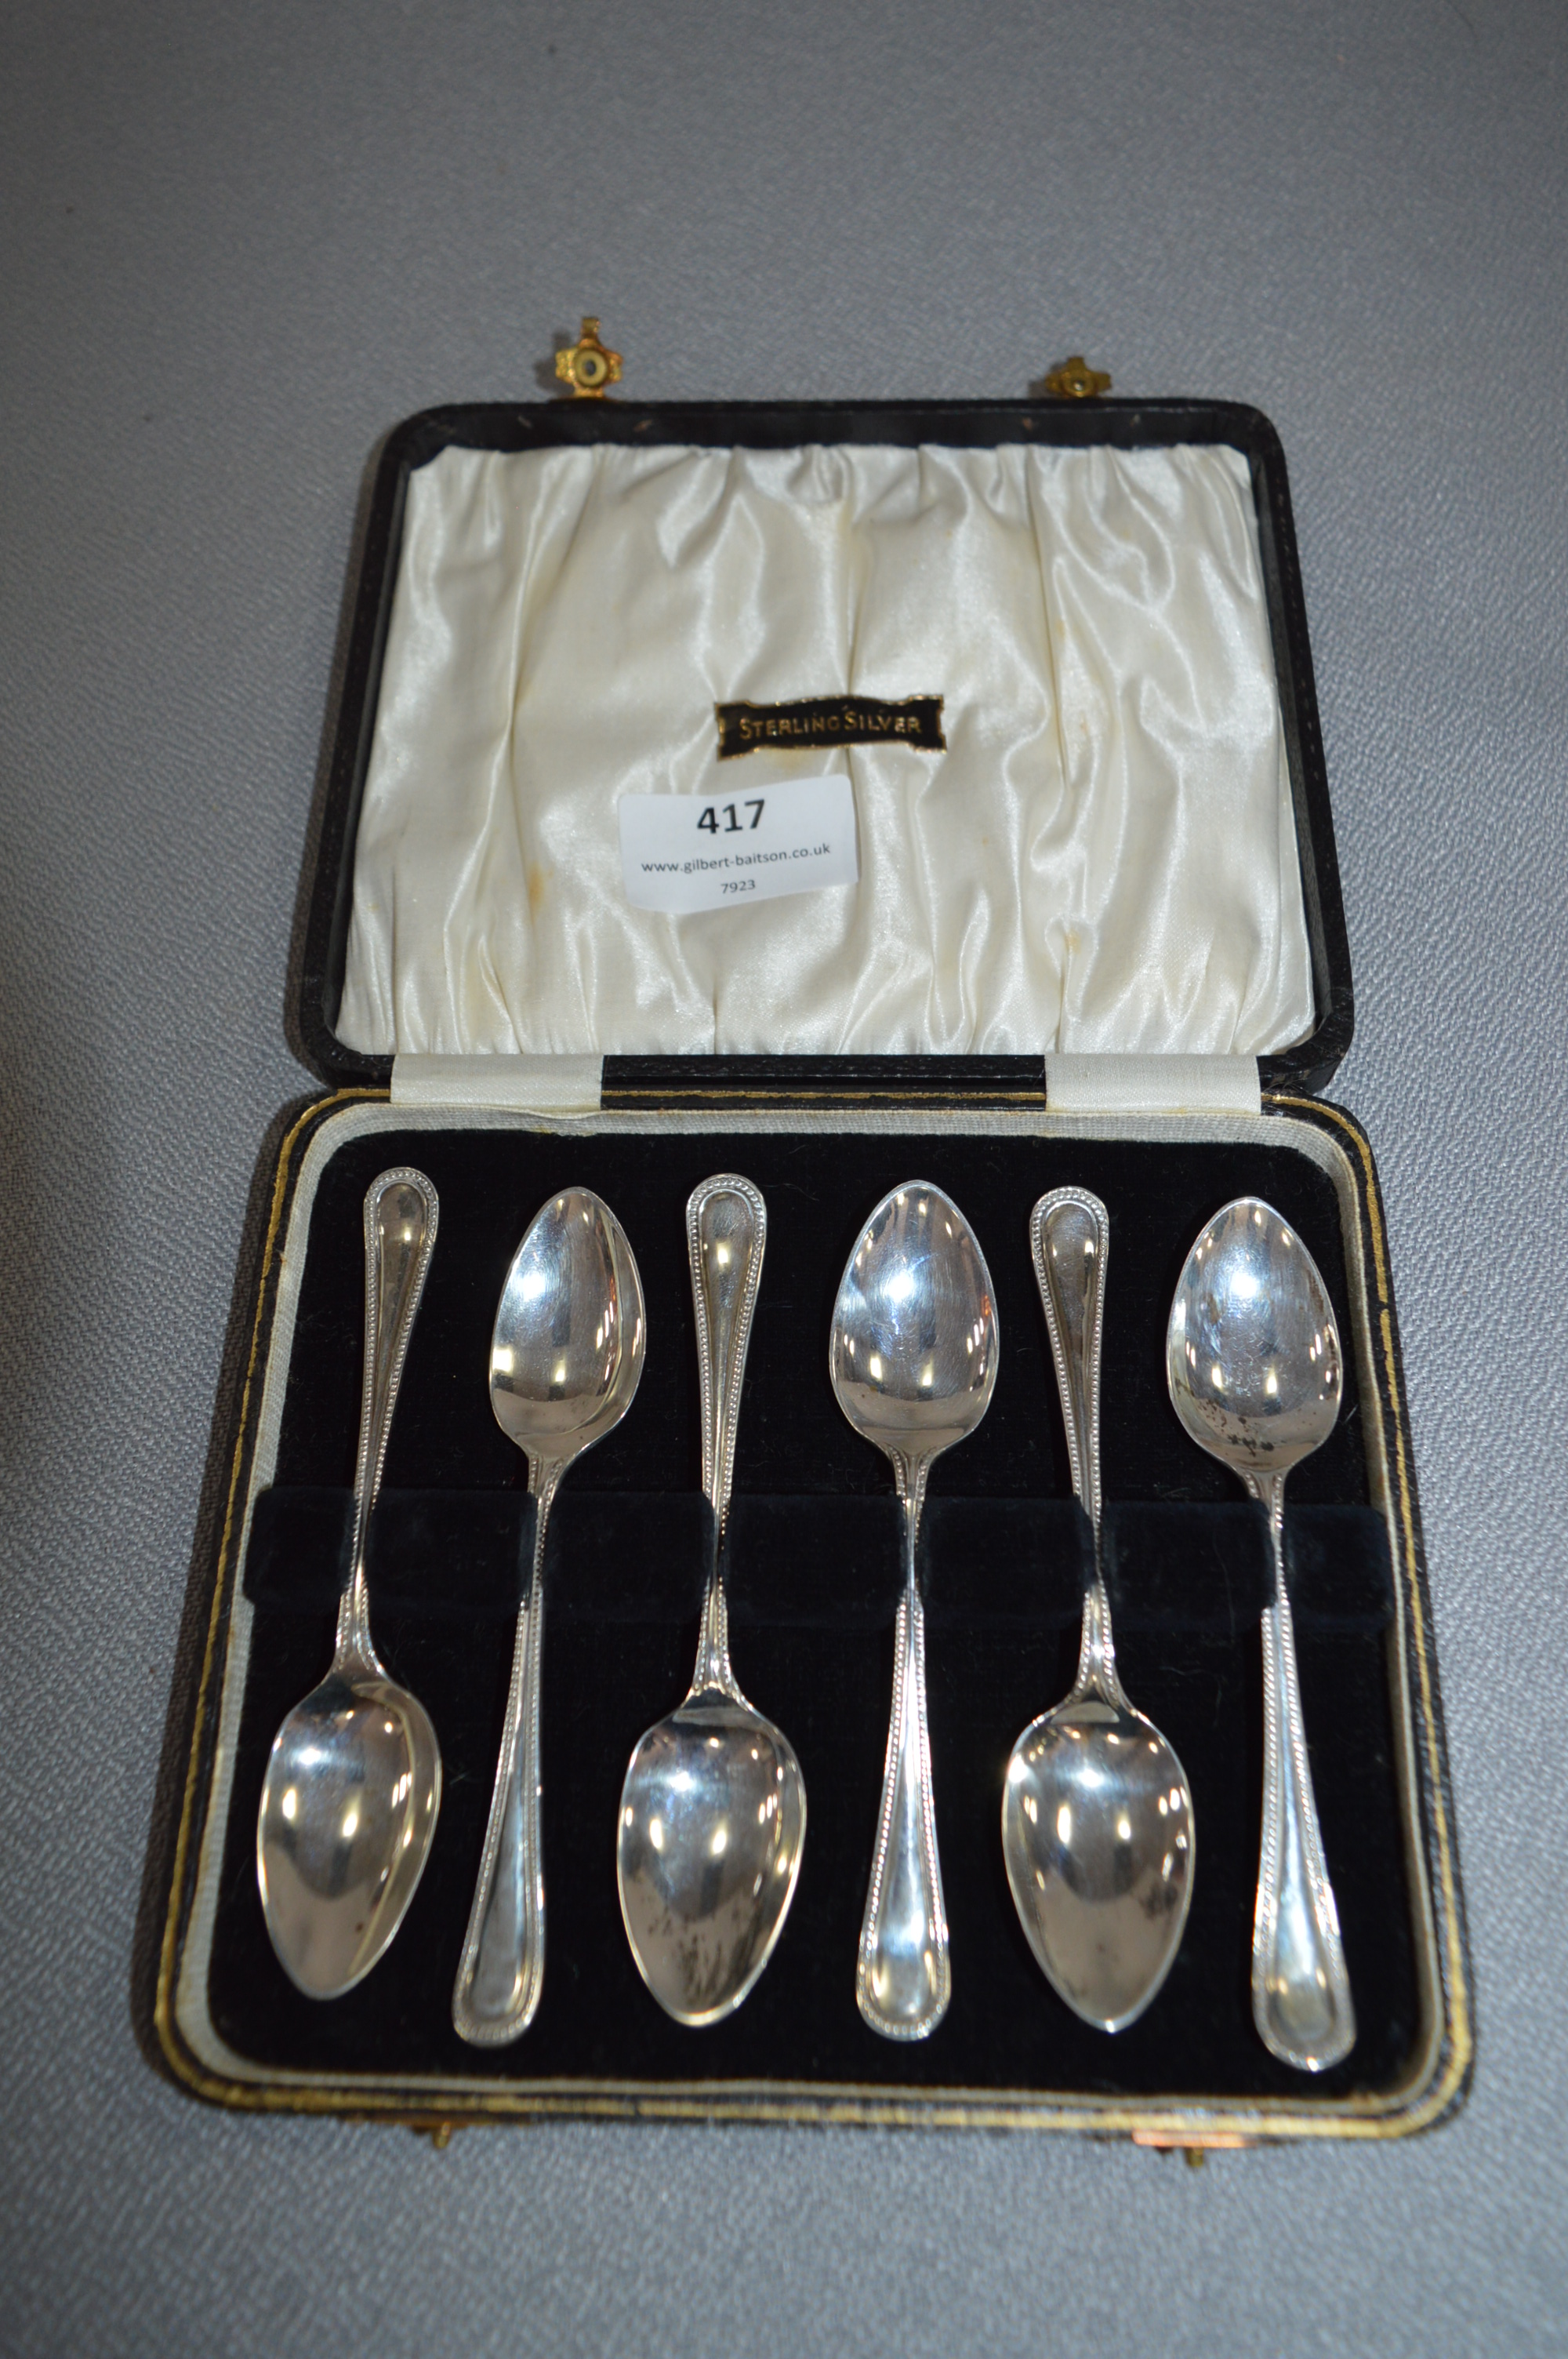 Cased Sterling Silver Teaspoon Set - Sheffield 1931, Approx 84g